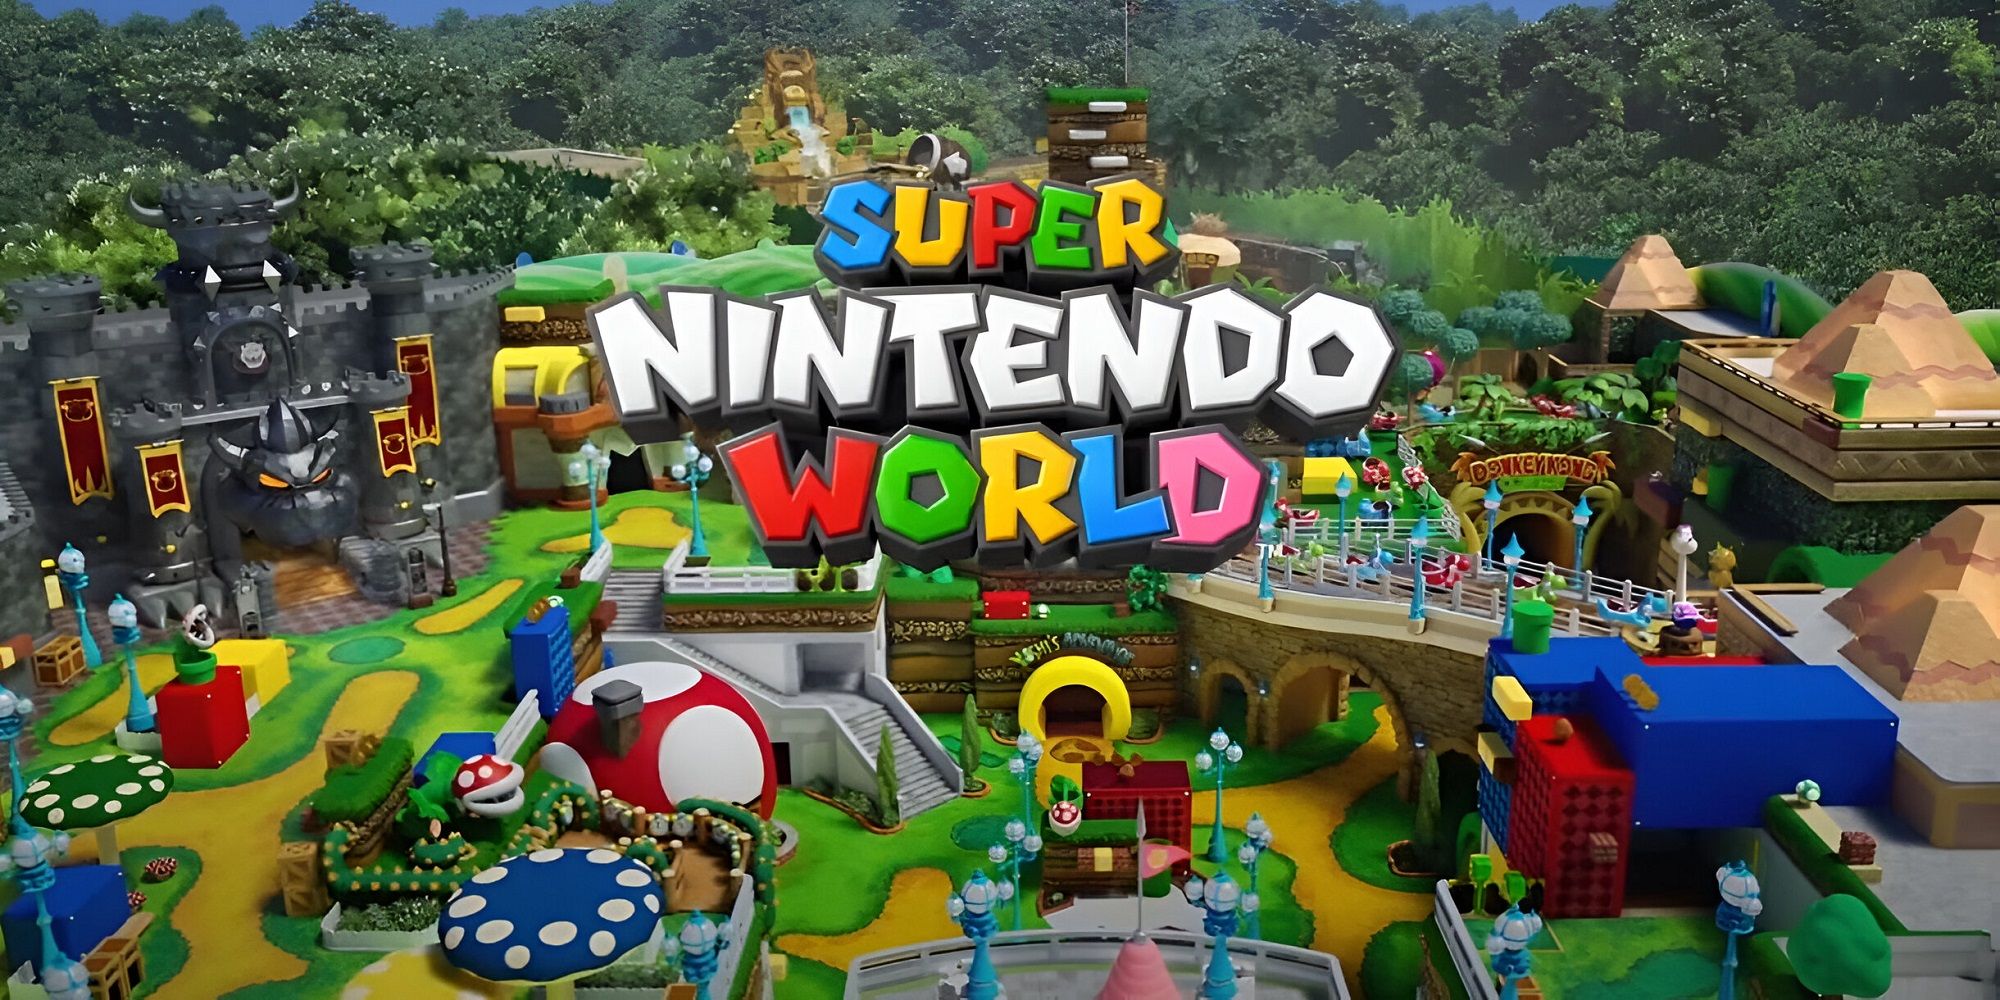 A concept preview art of Epic Universe's Super Nintendo World theme park.